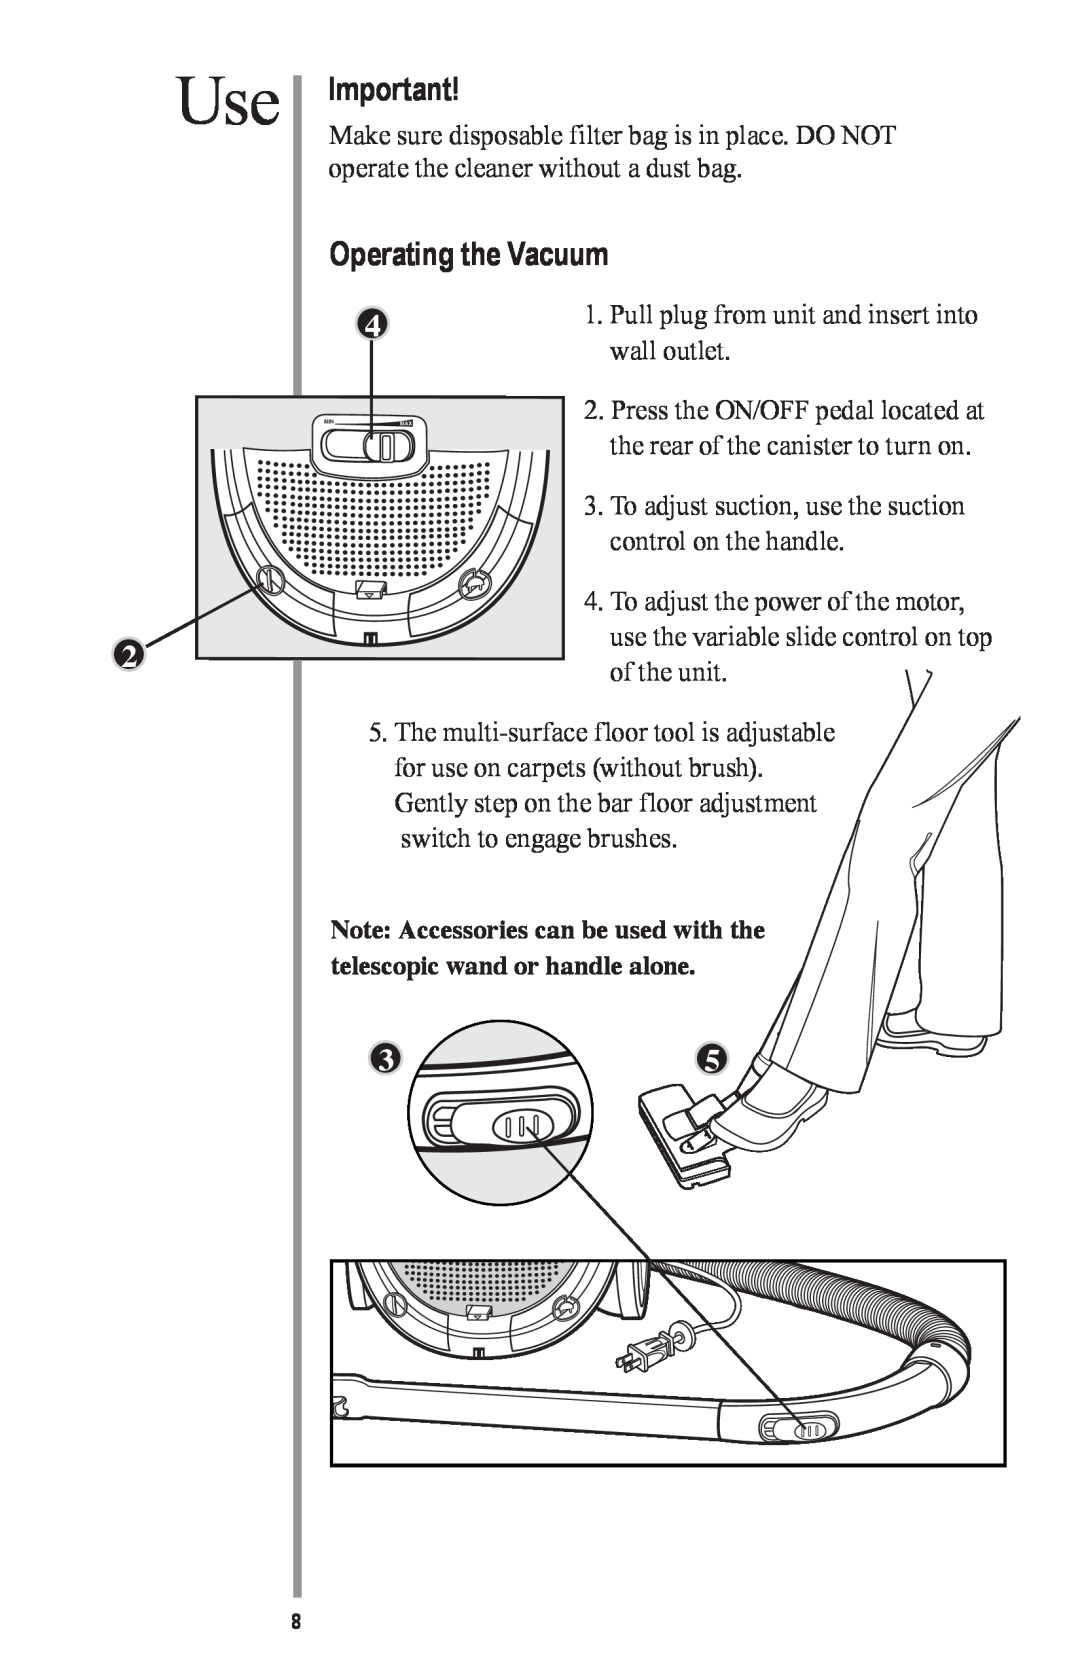 Oreck MC1000 manual Operating the Vacuum 